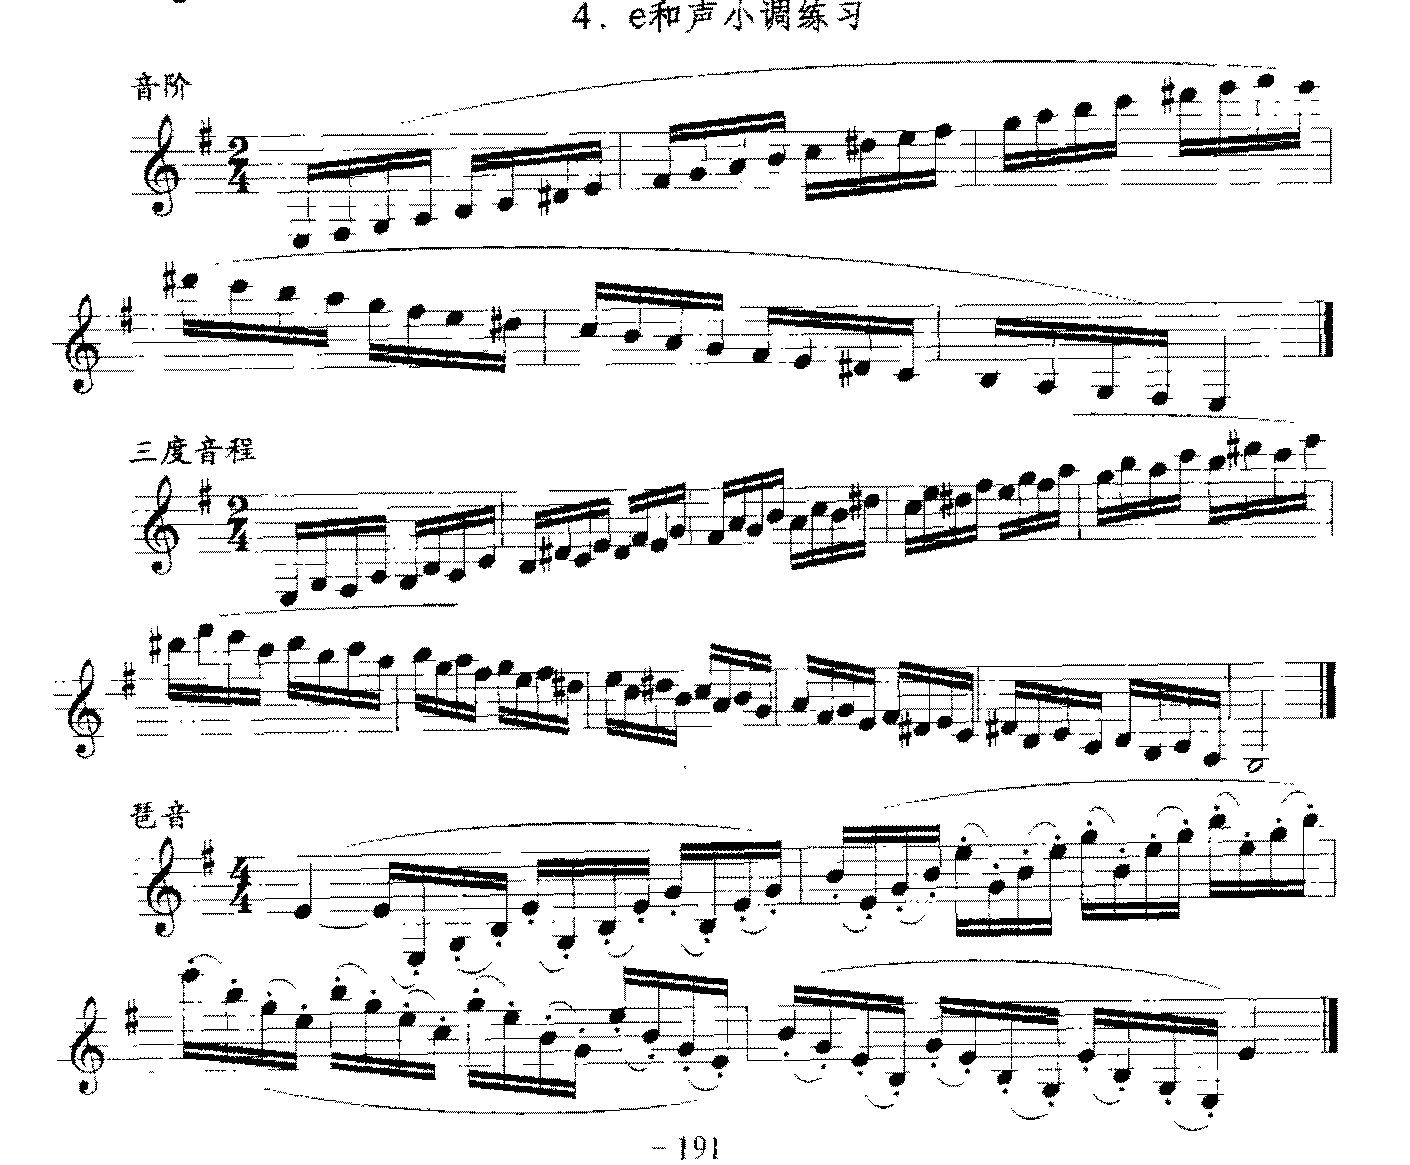 单簧管日常基础技术练习曲《e和声小调练习》